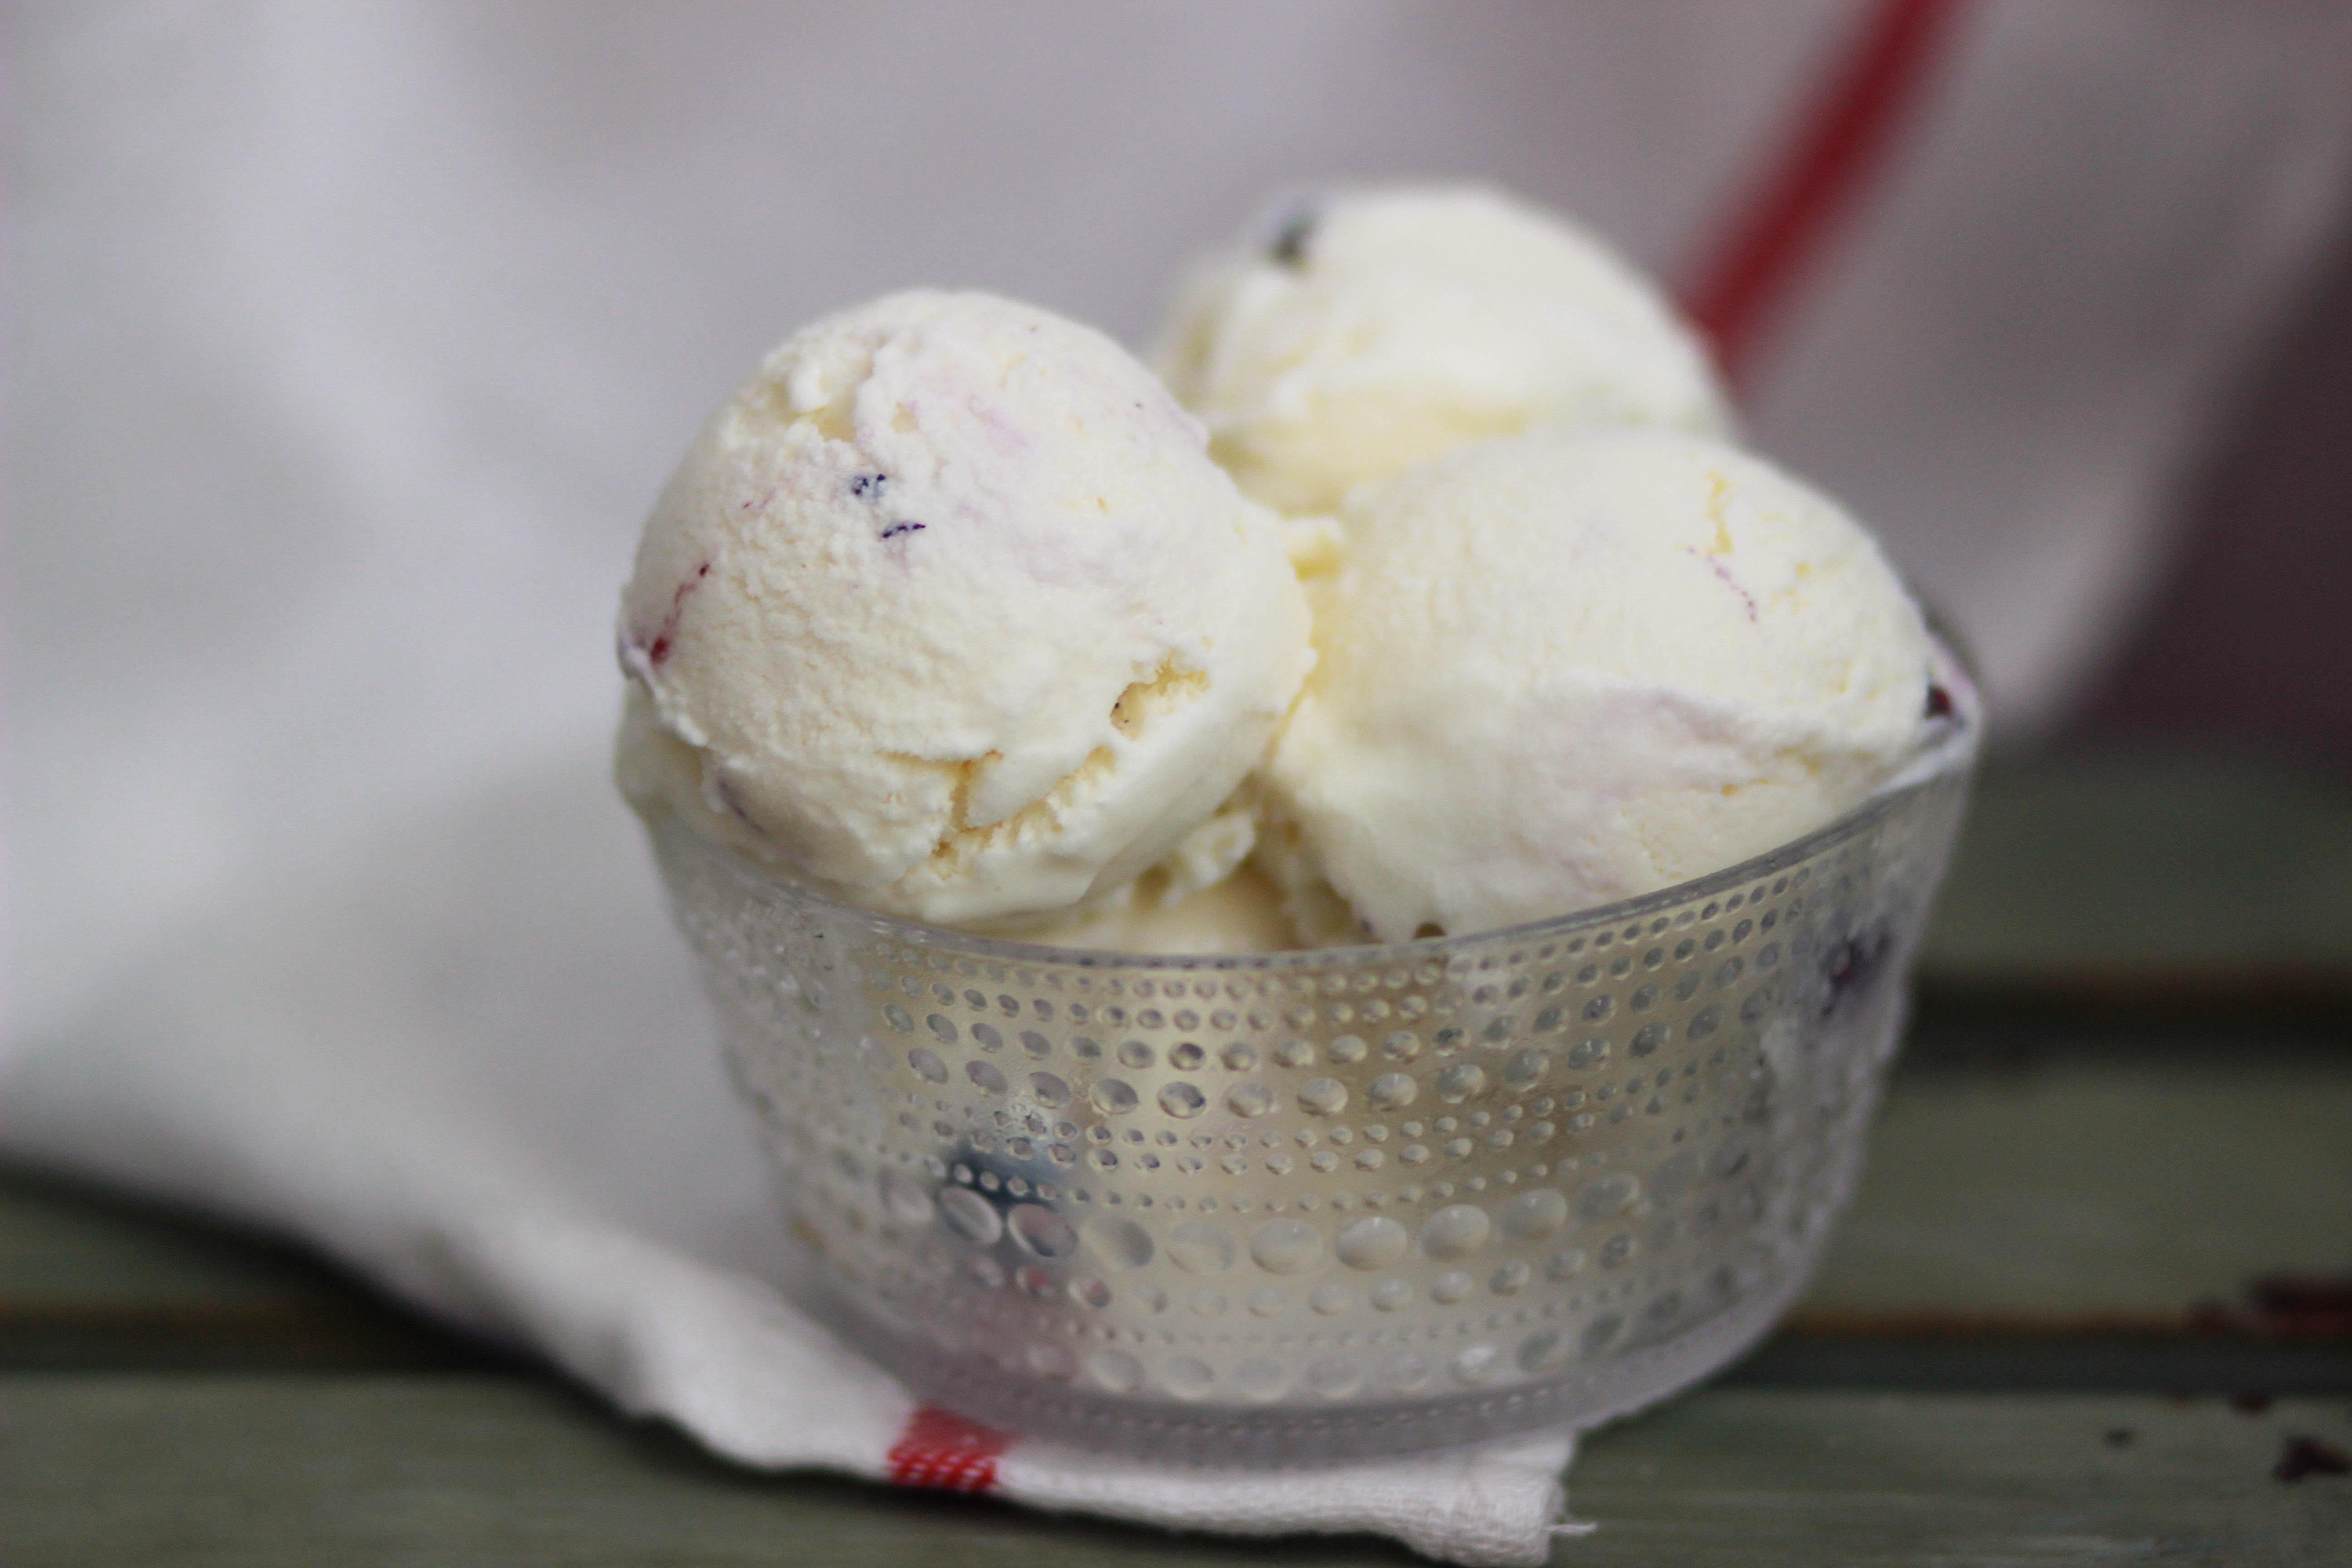 蓝莓乳酪冰淇淋